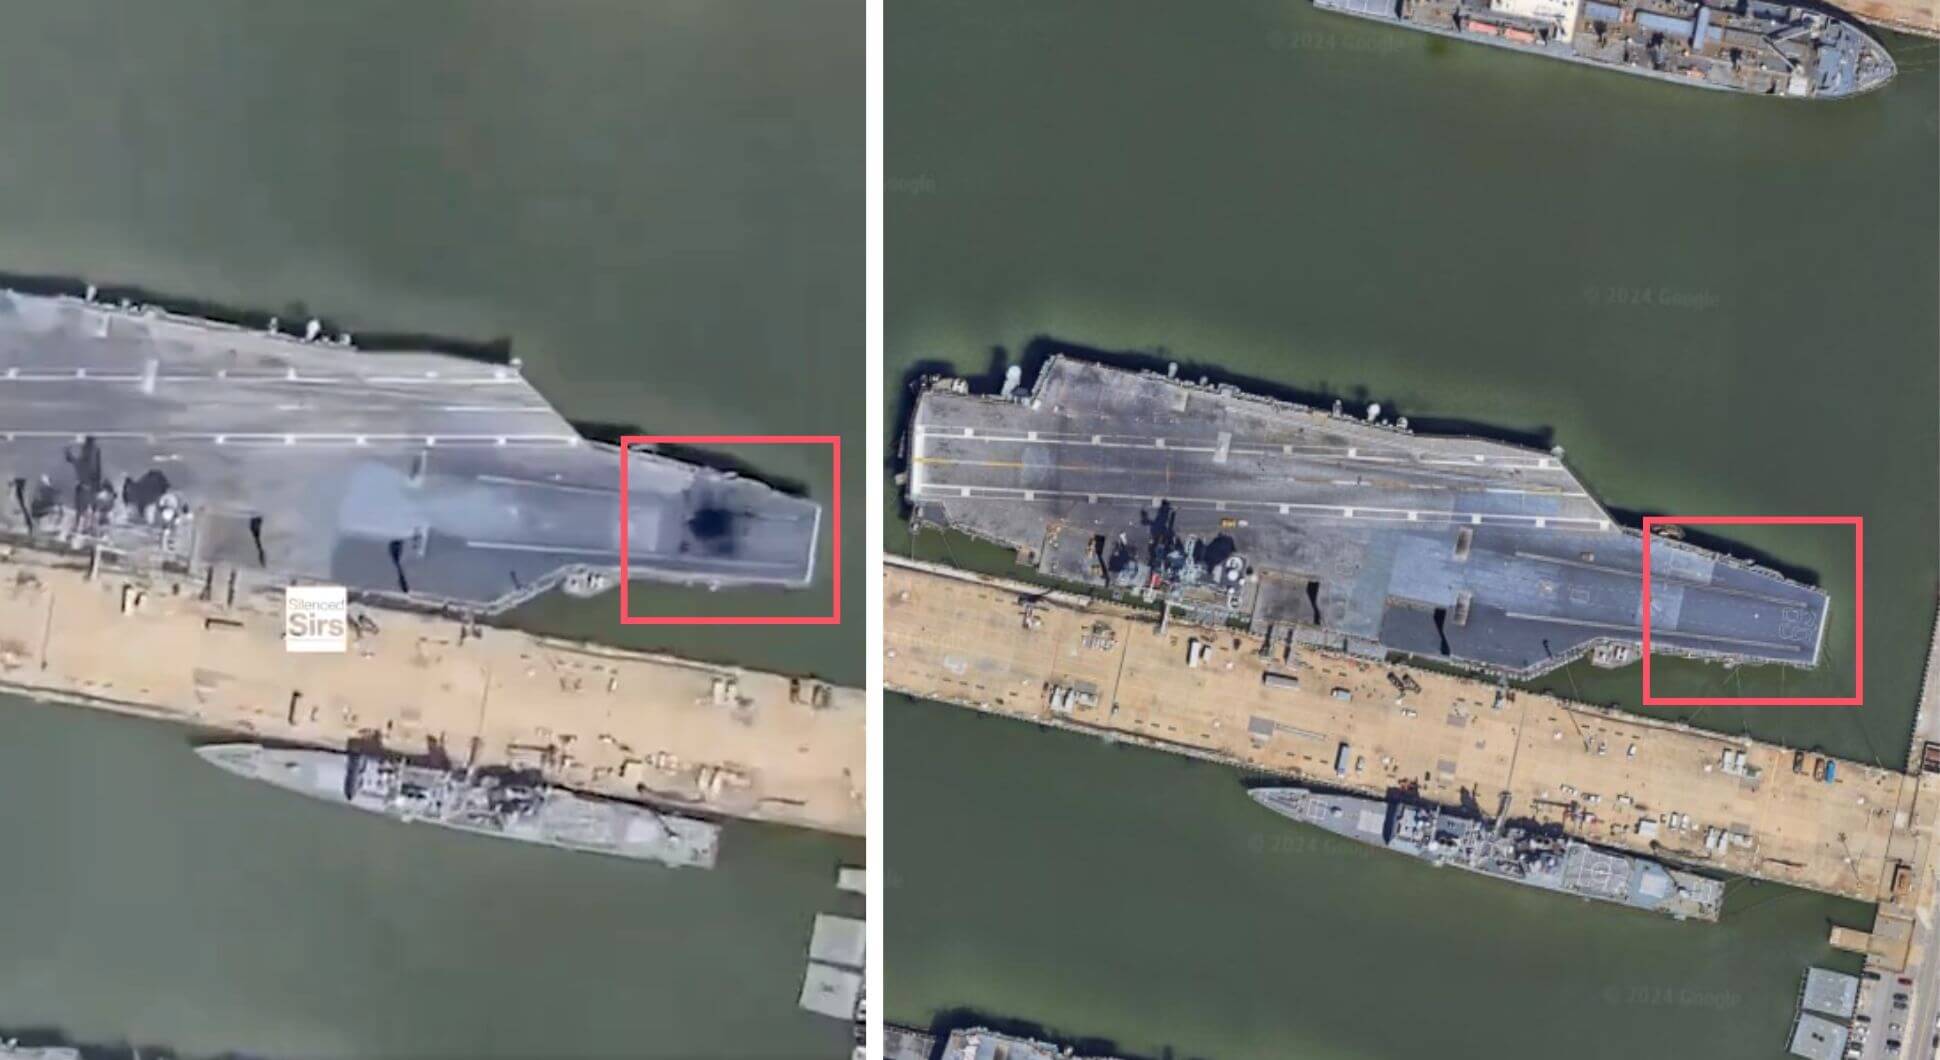 Links ist ein Loch an Deck der USS Eisenhower zu sehen - im Foto rechts nicht